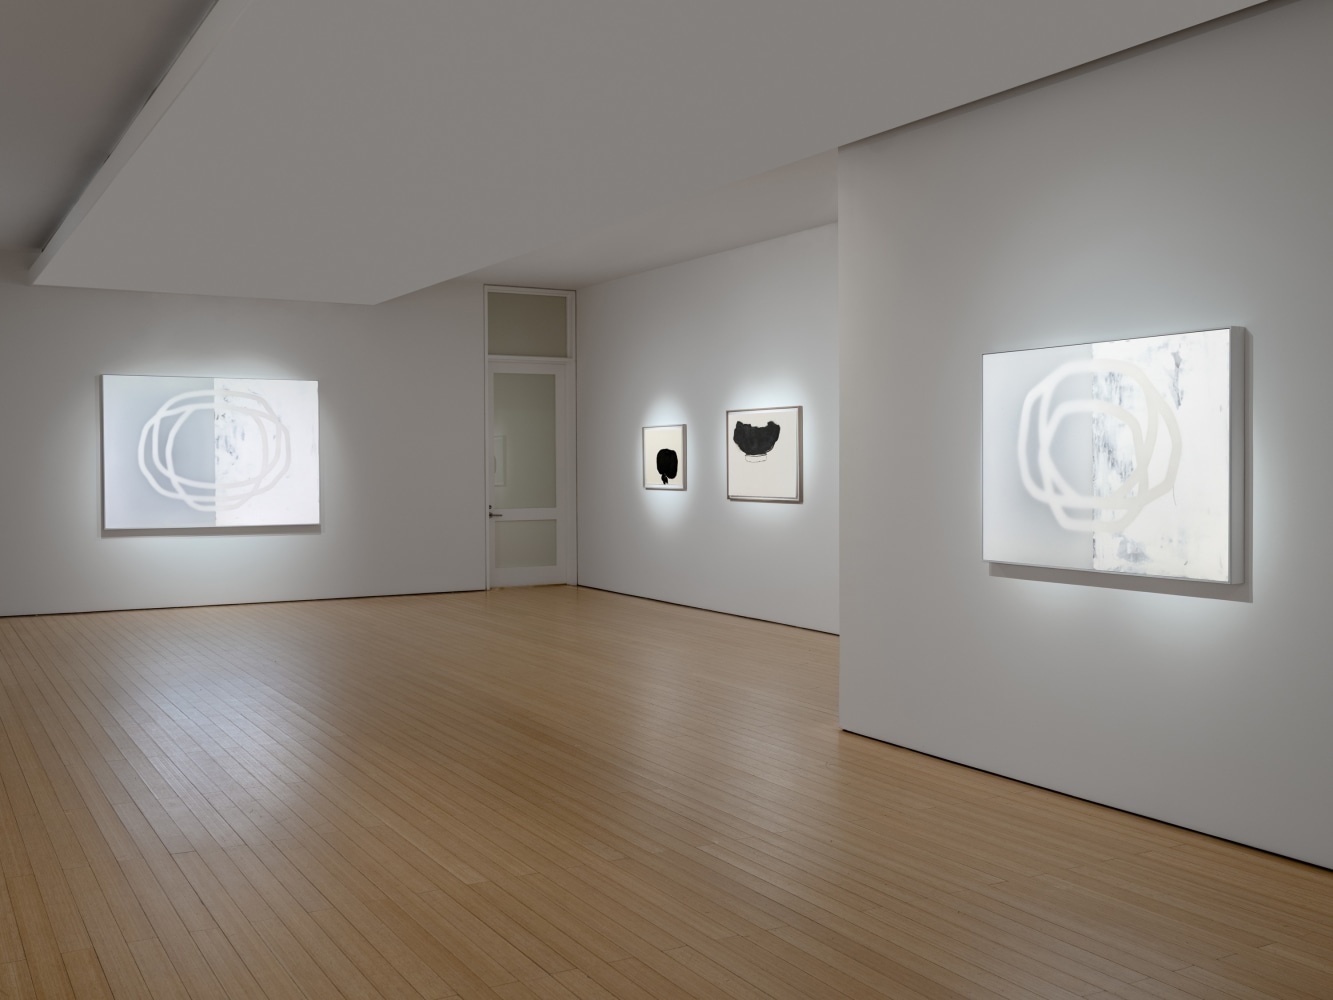 Udo Noger
Gallery View
Callan Contemporary